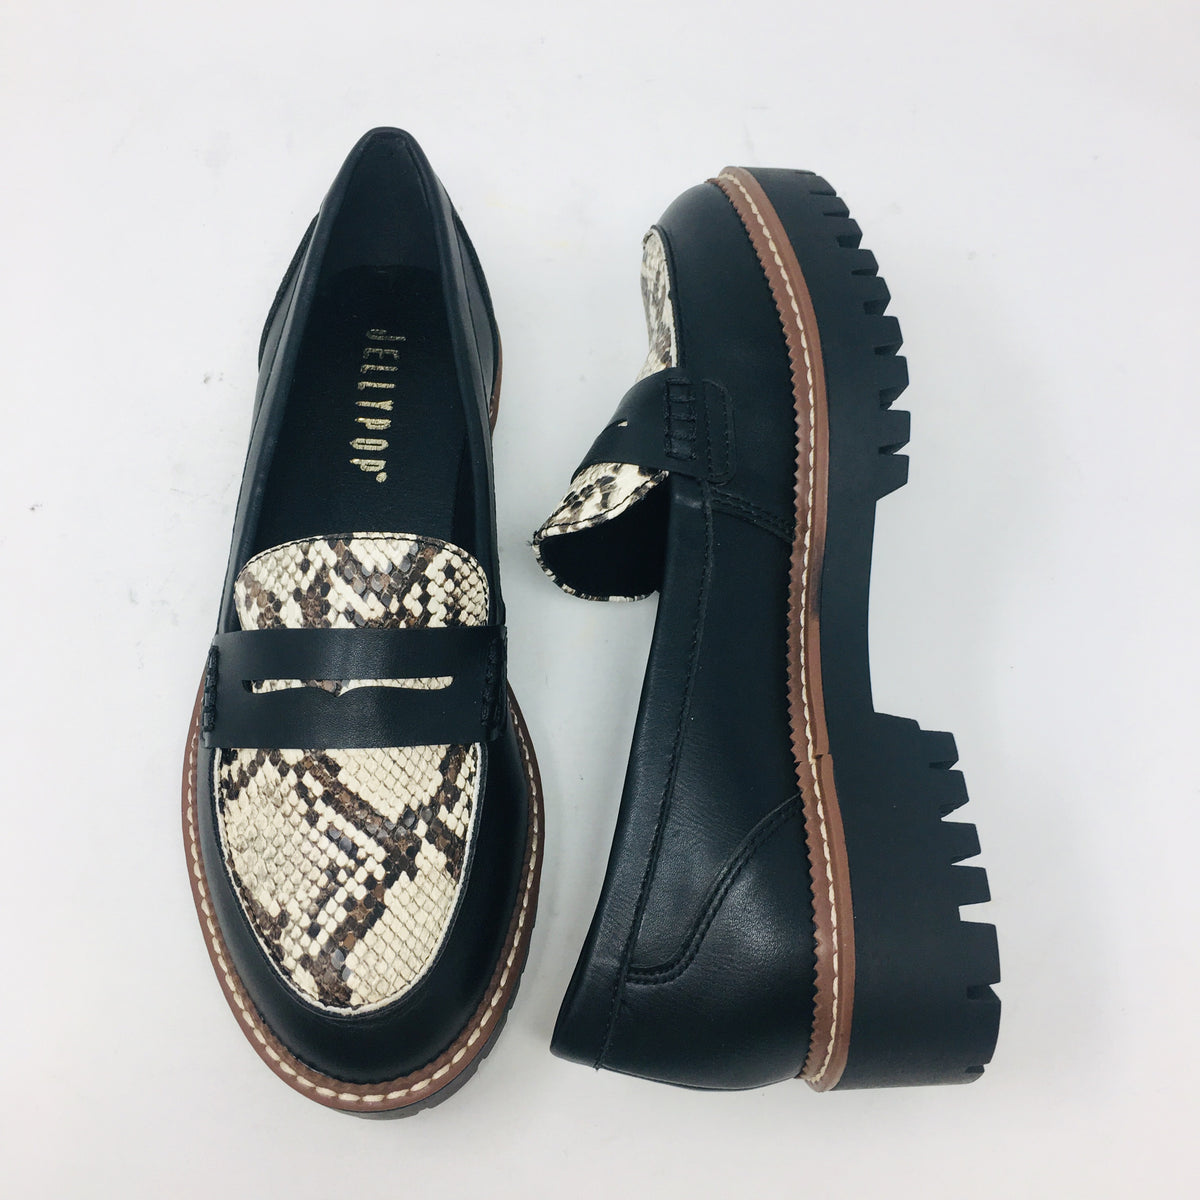 Paris Black/Snake Skin Shoe